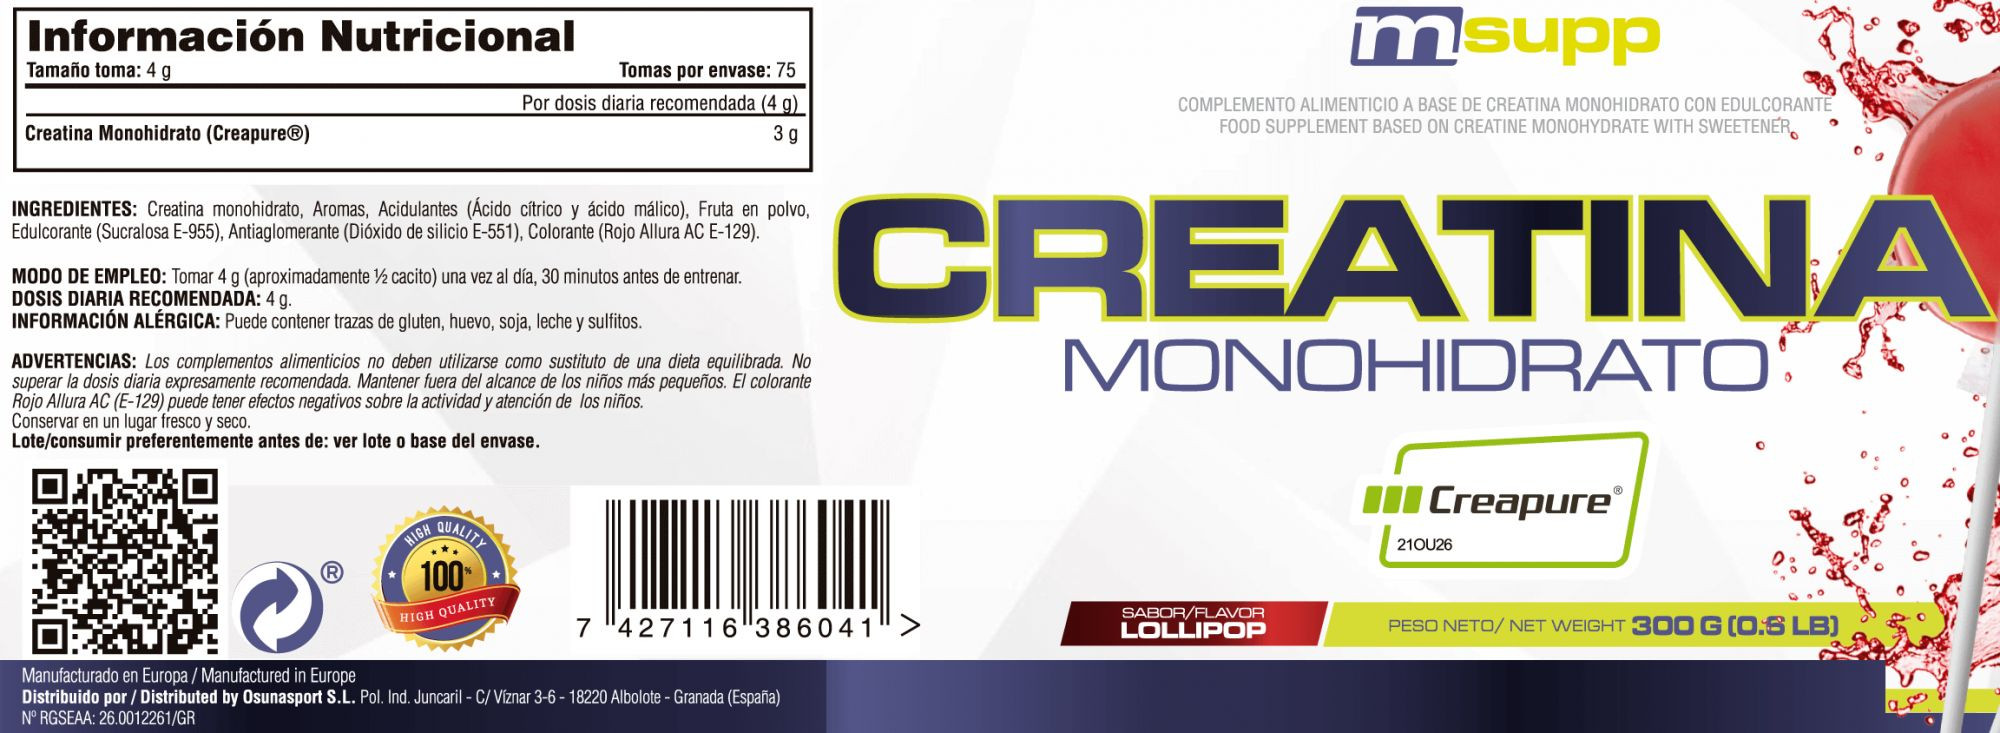 Creatina (Creapure®) - 300g De Mm Supplements Sabor Lollipop